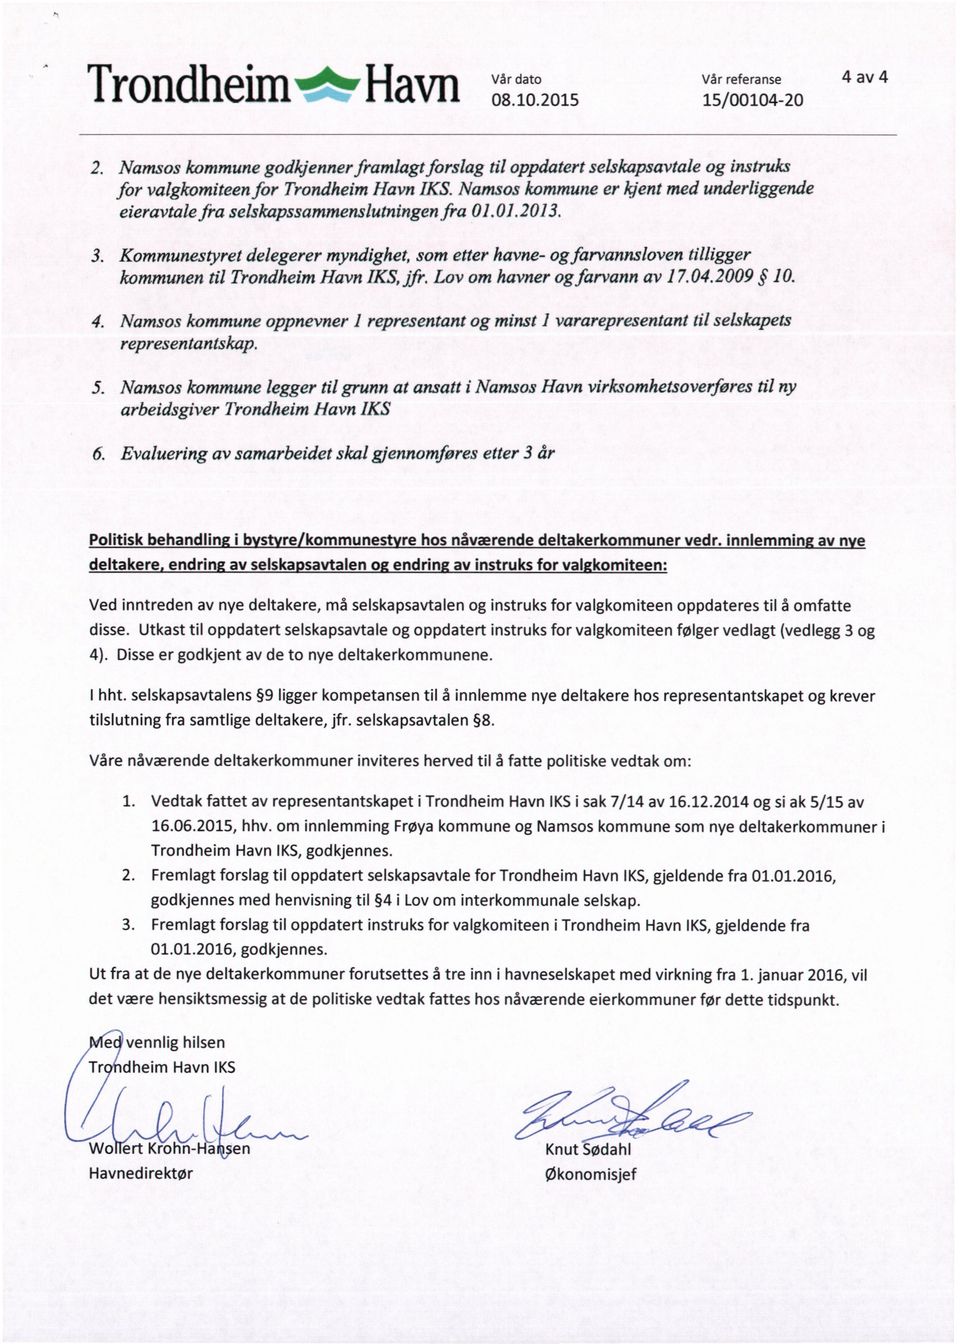 Kommunestyret delegerer myndighet, som etter havne- og farvannsloven tilligger kommunen til Trondheim Havn IKS, jfr. Lov om havner og farvann av 1 7.04.2009 10. 4.